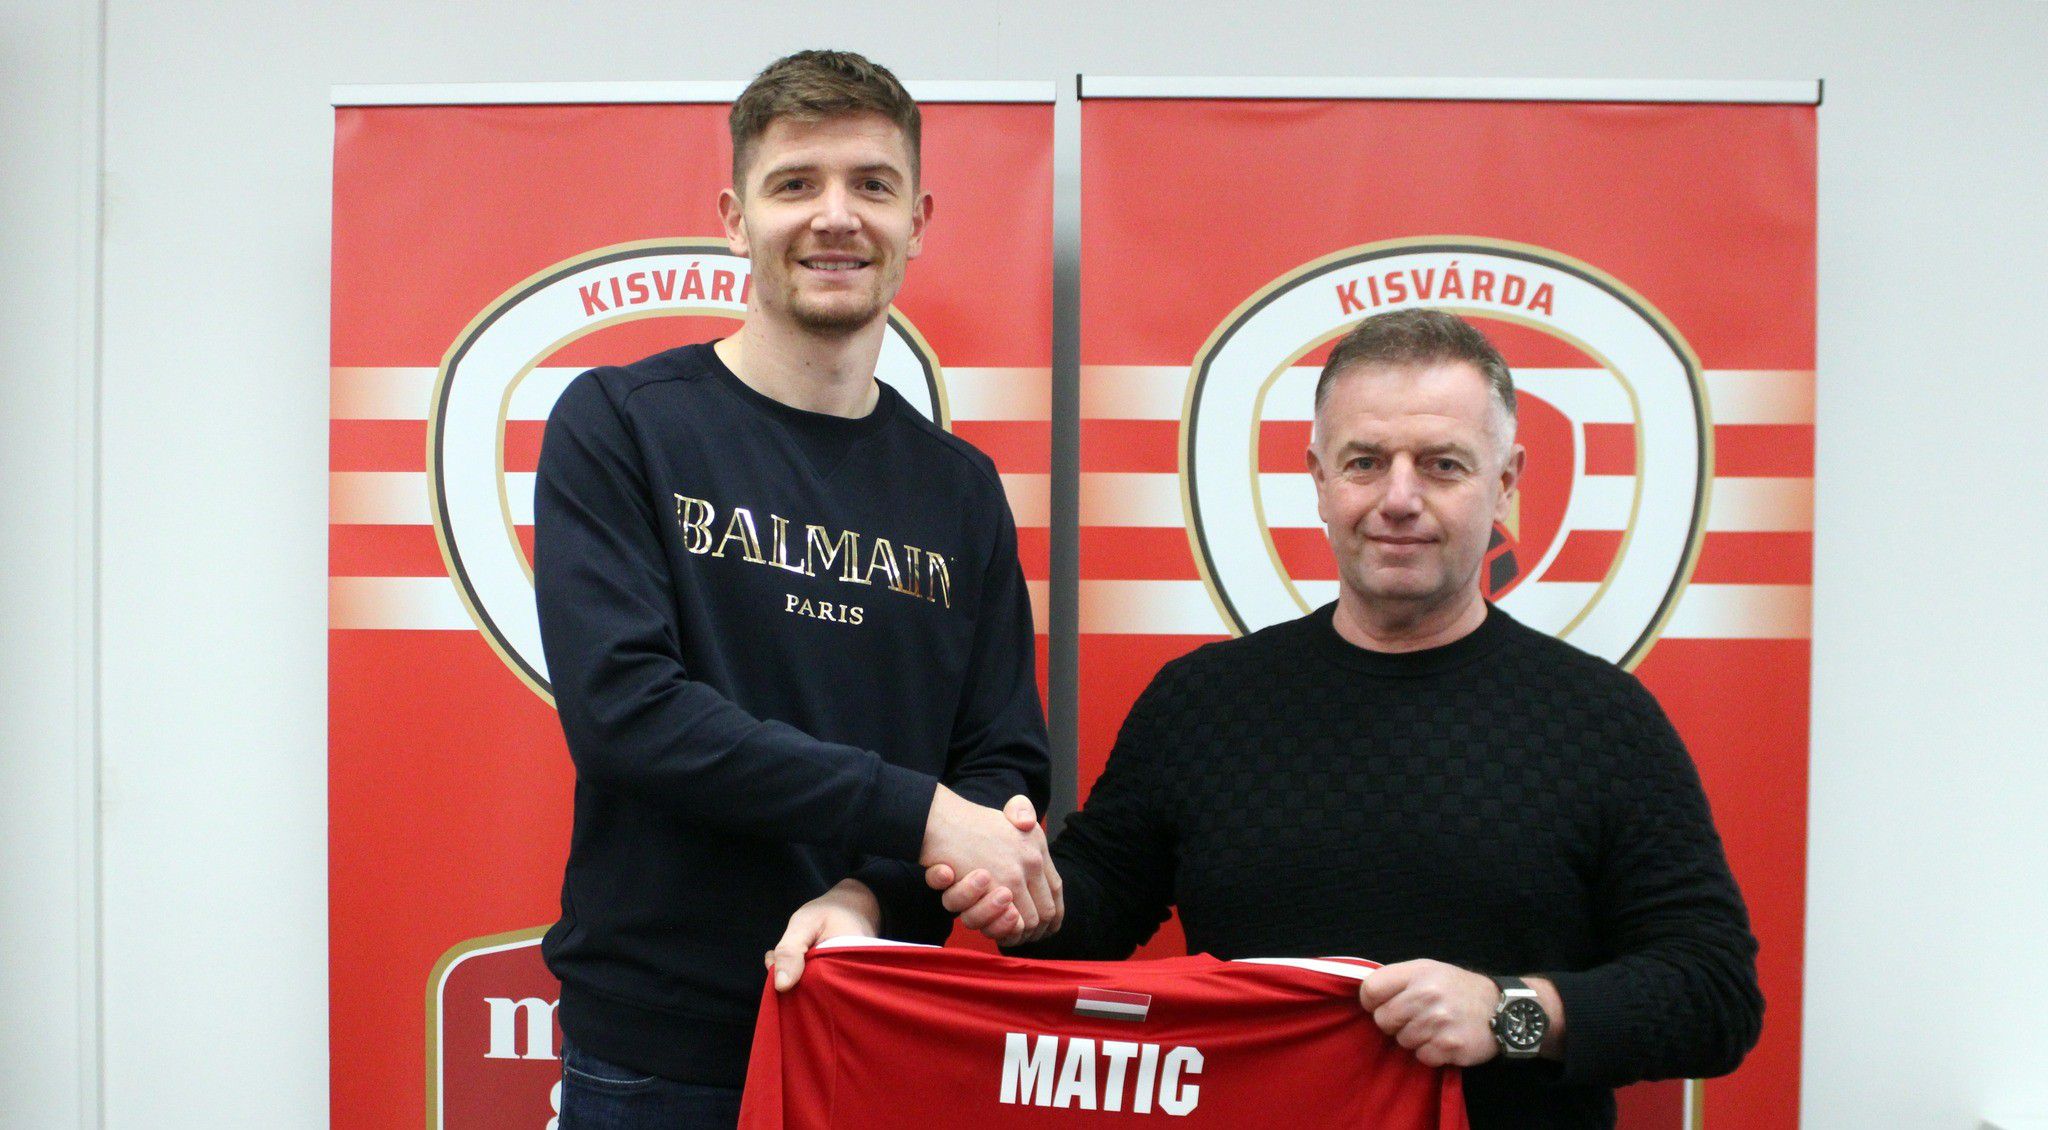 A 4-es mezszámot választotta Matic. Fotó: Kisvárda FC